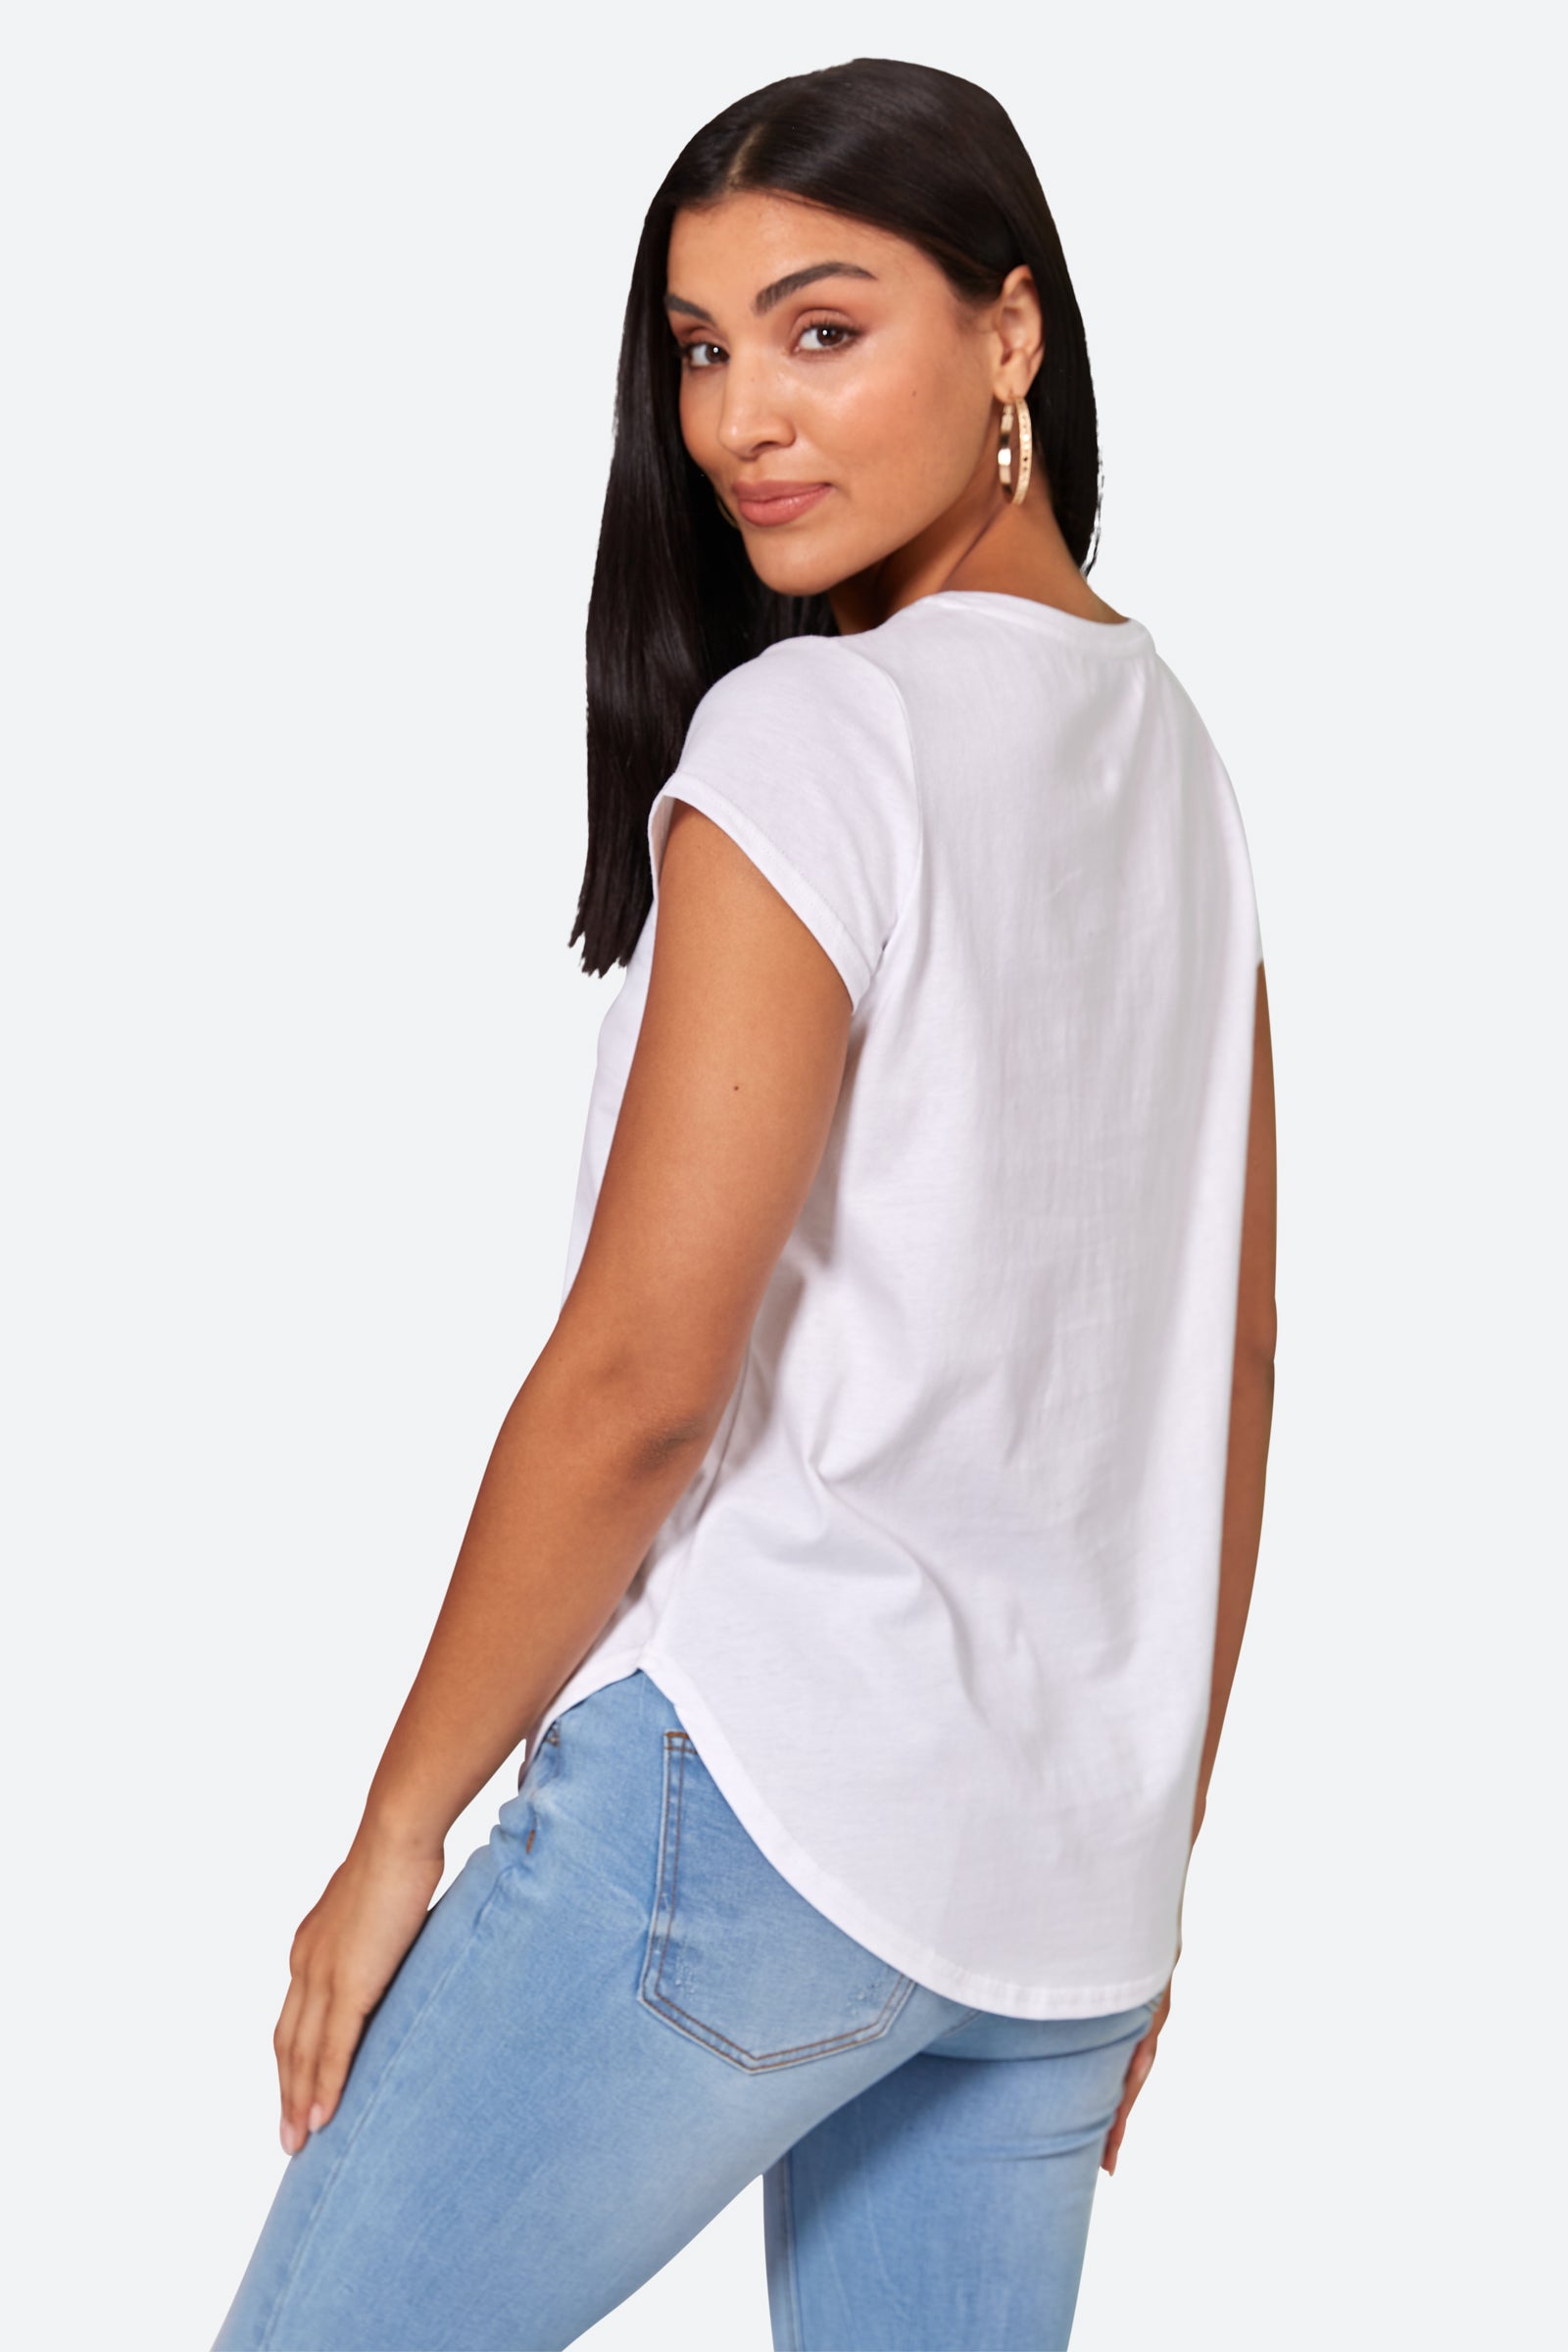 Reveler Tshirt - Blanc - eb&ive Clothing - Top Tshirt S/S